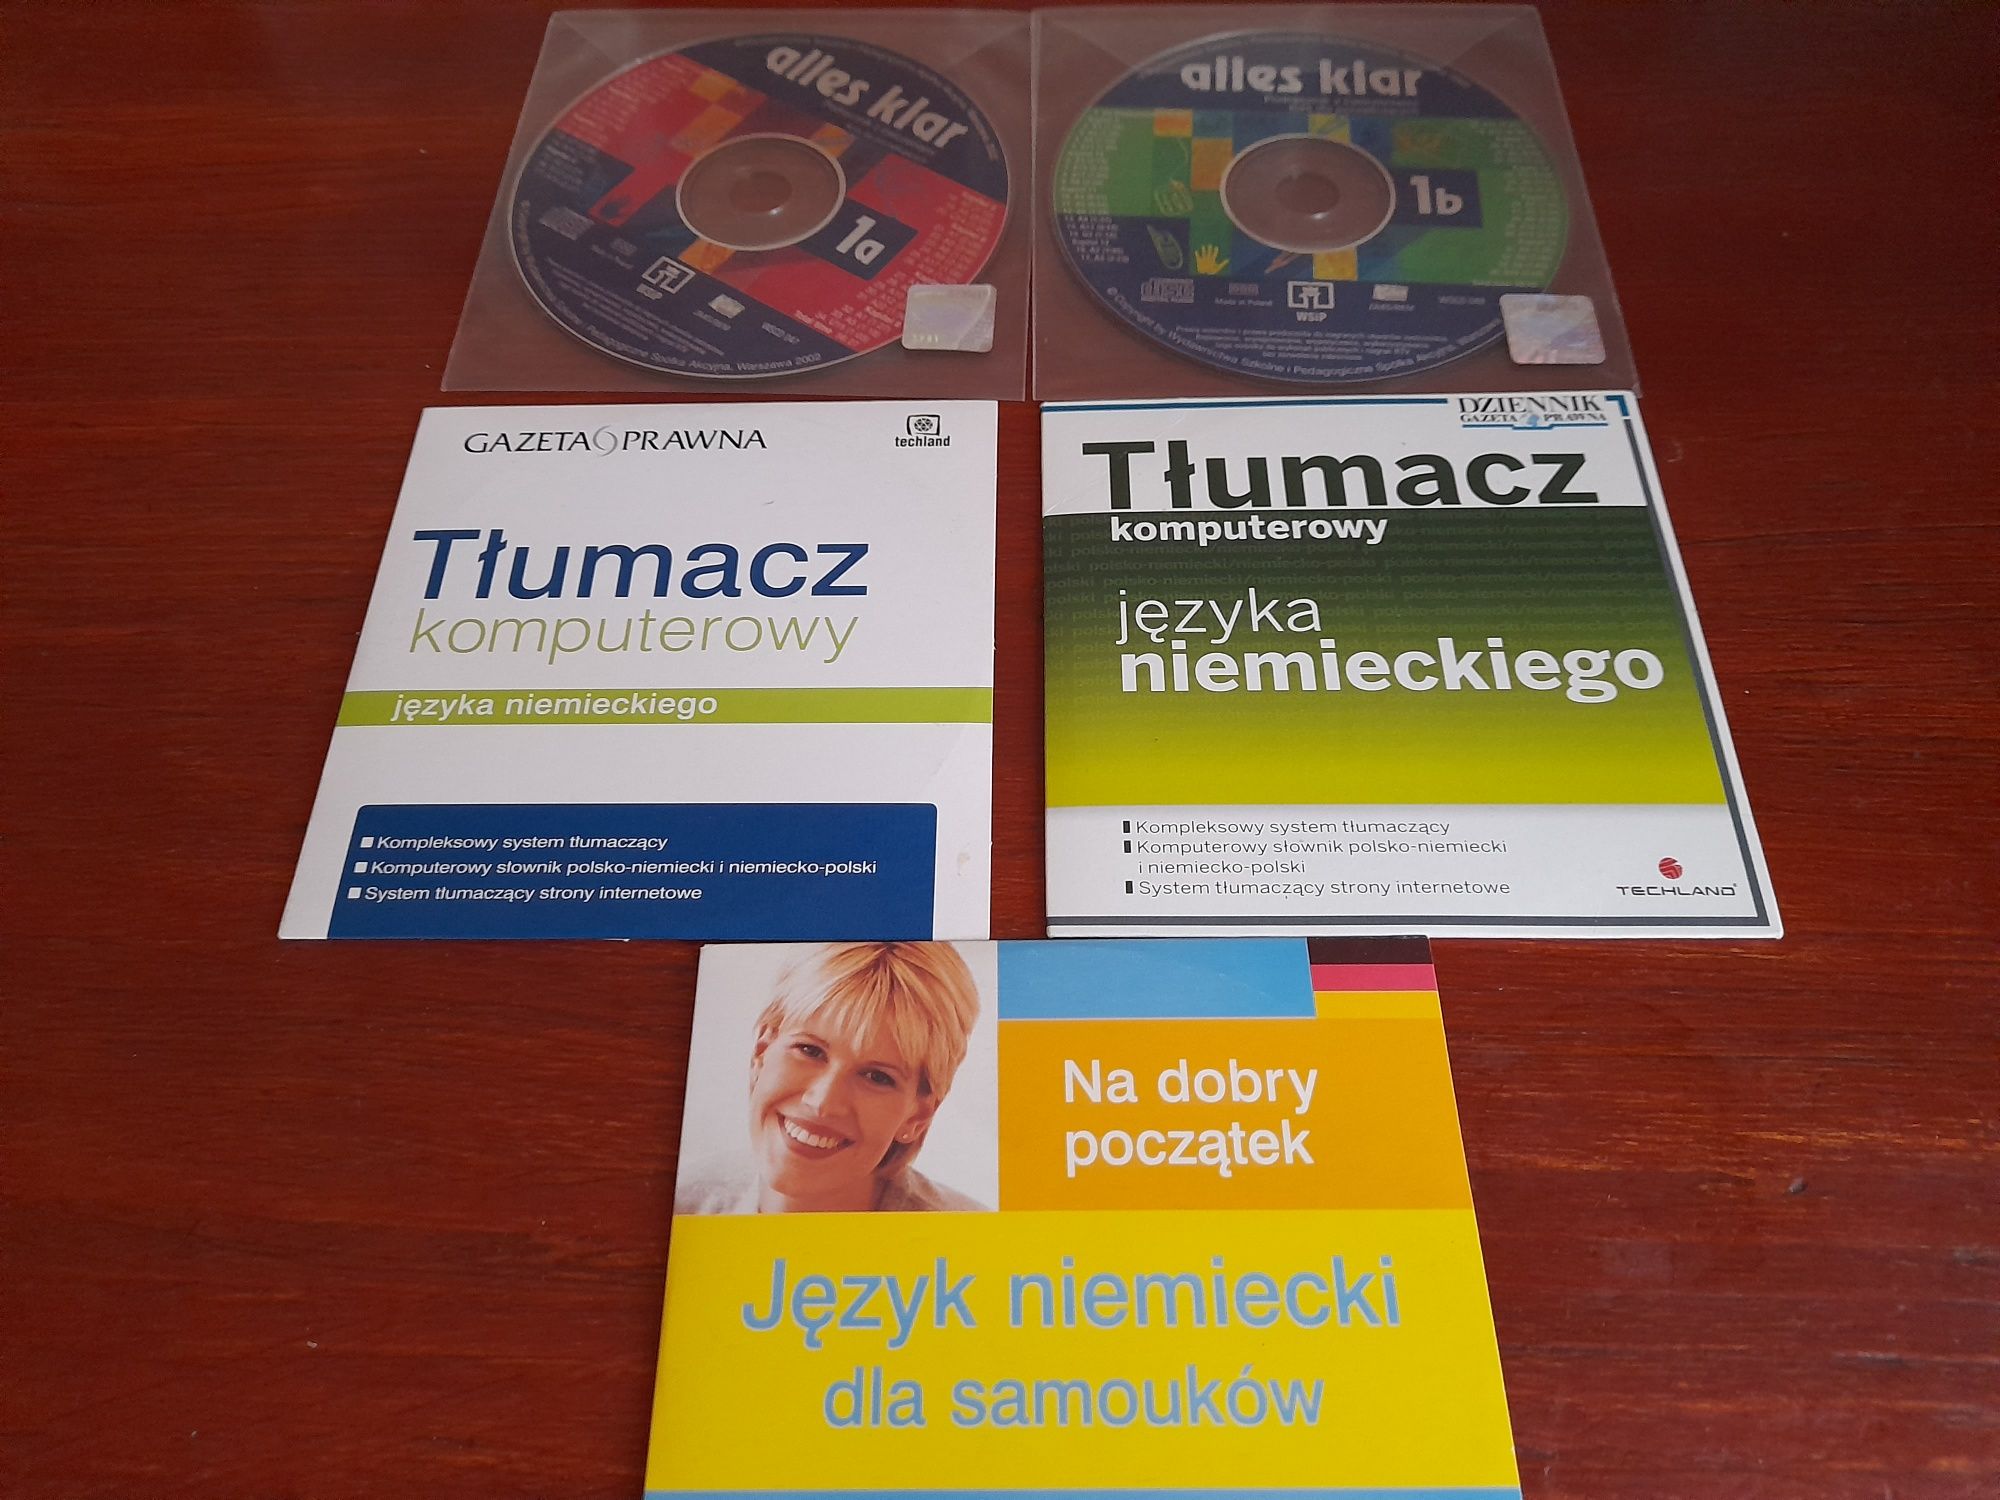 Zestaw plyt CD do nauki języka niemieckiego.